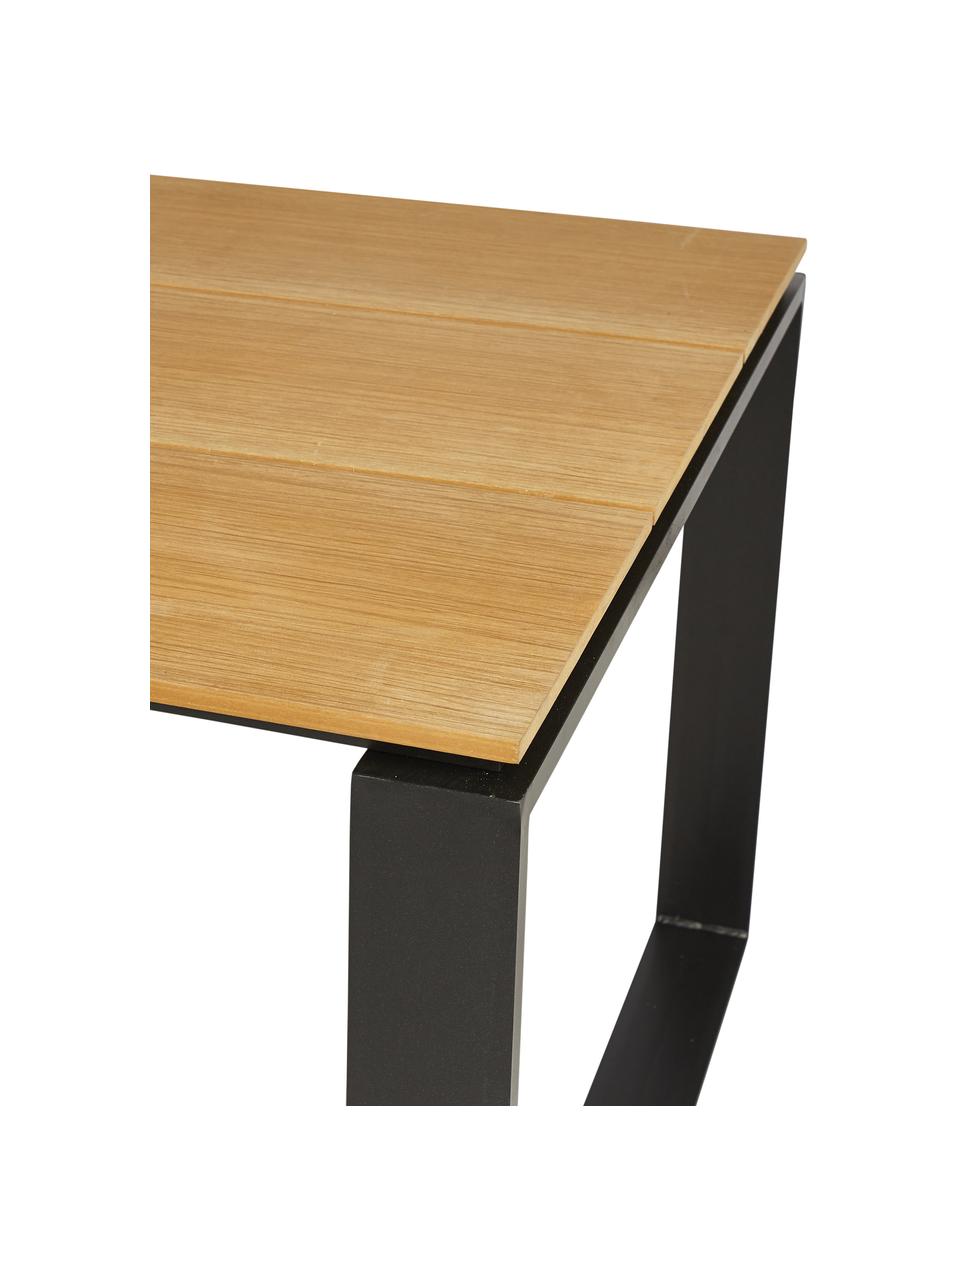 Garten-Esstisch Brutus, Tischplatte: Polywood, Beine: Aluminium, beschichtet, Holz, hell, B 210 x T 100 cm